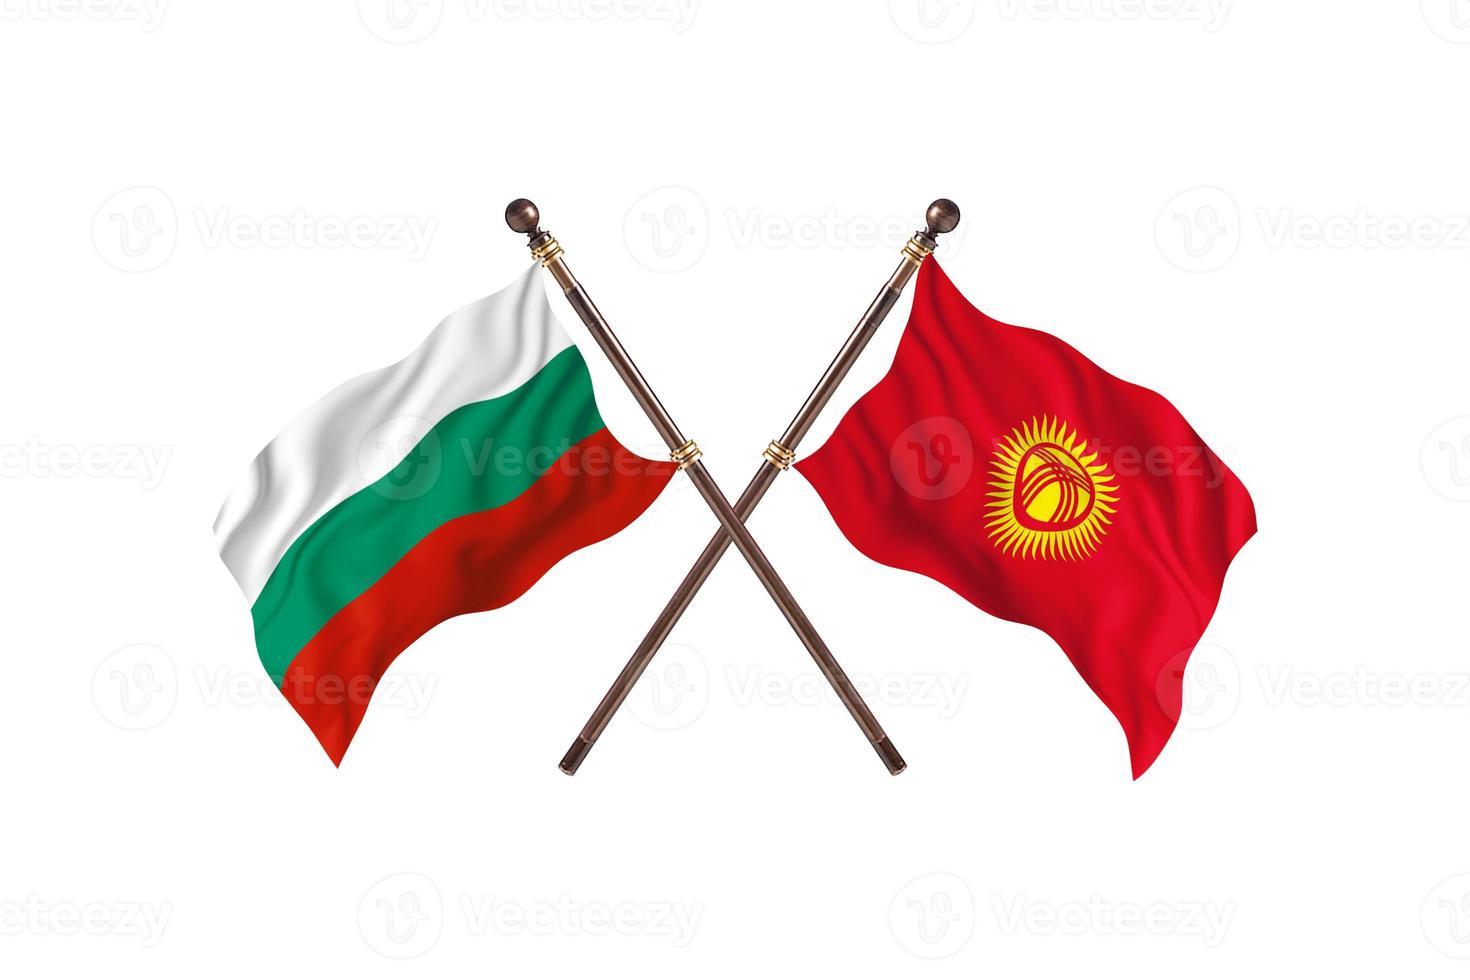 la bulgarie contre le kirghizistan deux drapeaux de pays photo